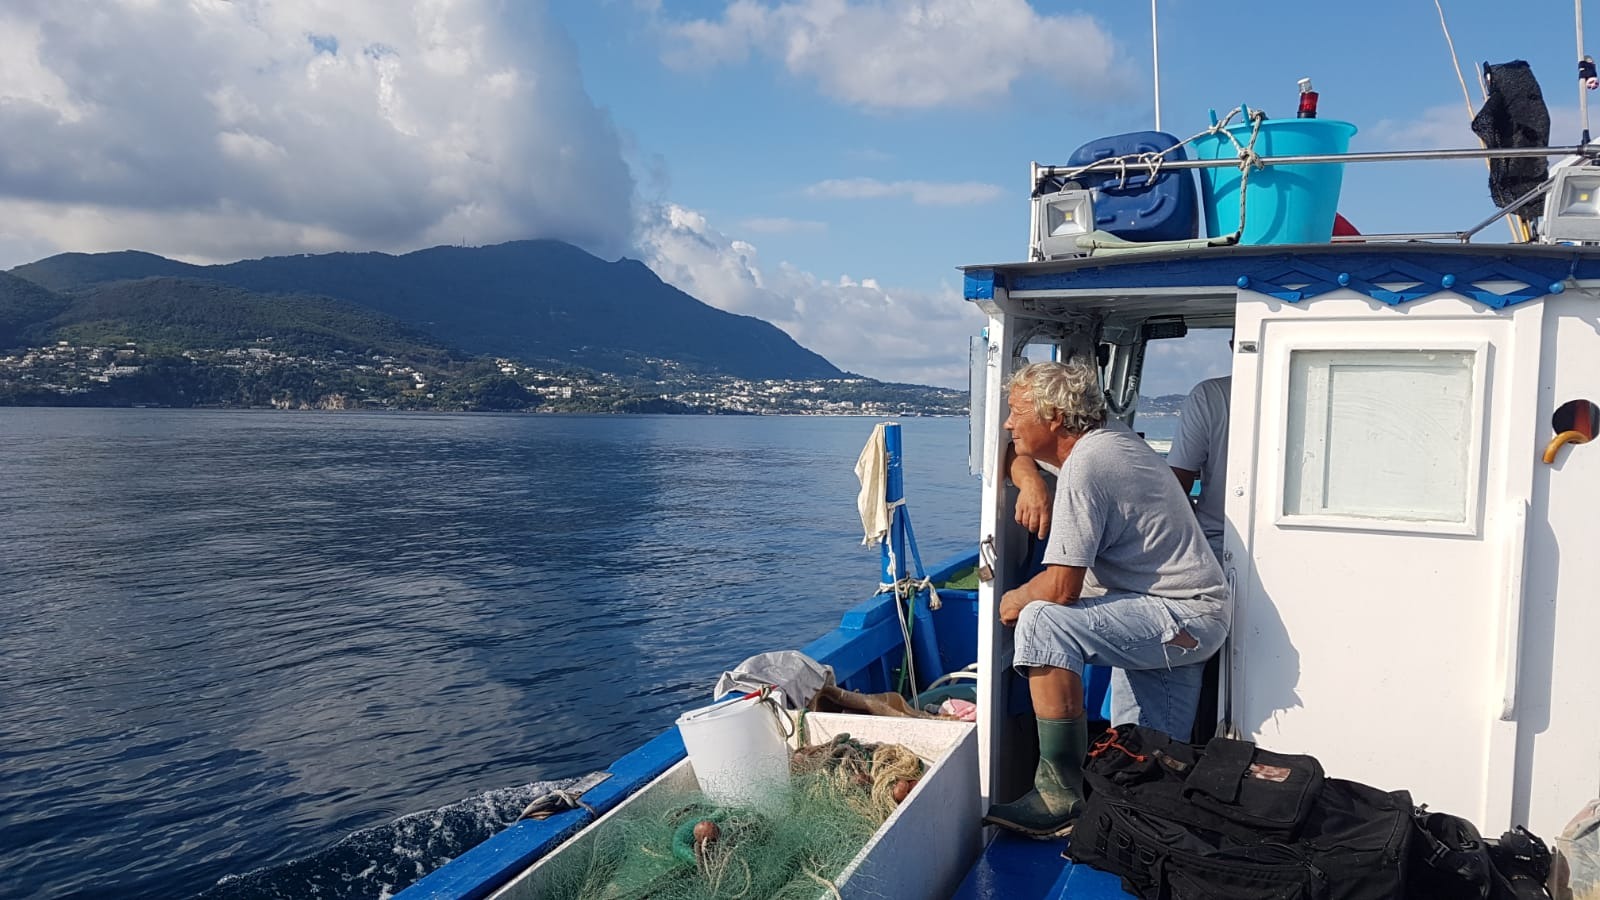 Salvare i delfini senza danneggiare i pescatori: Punta Campanella laboratorio per progetto europeo Life Delfi